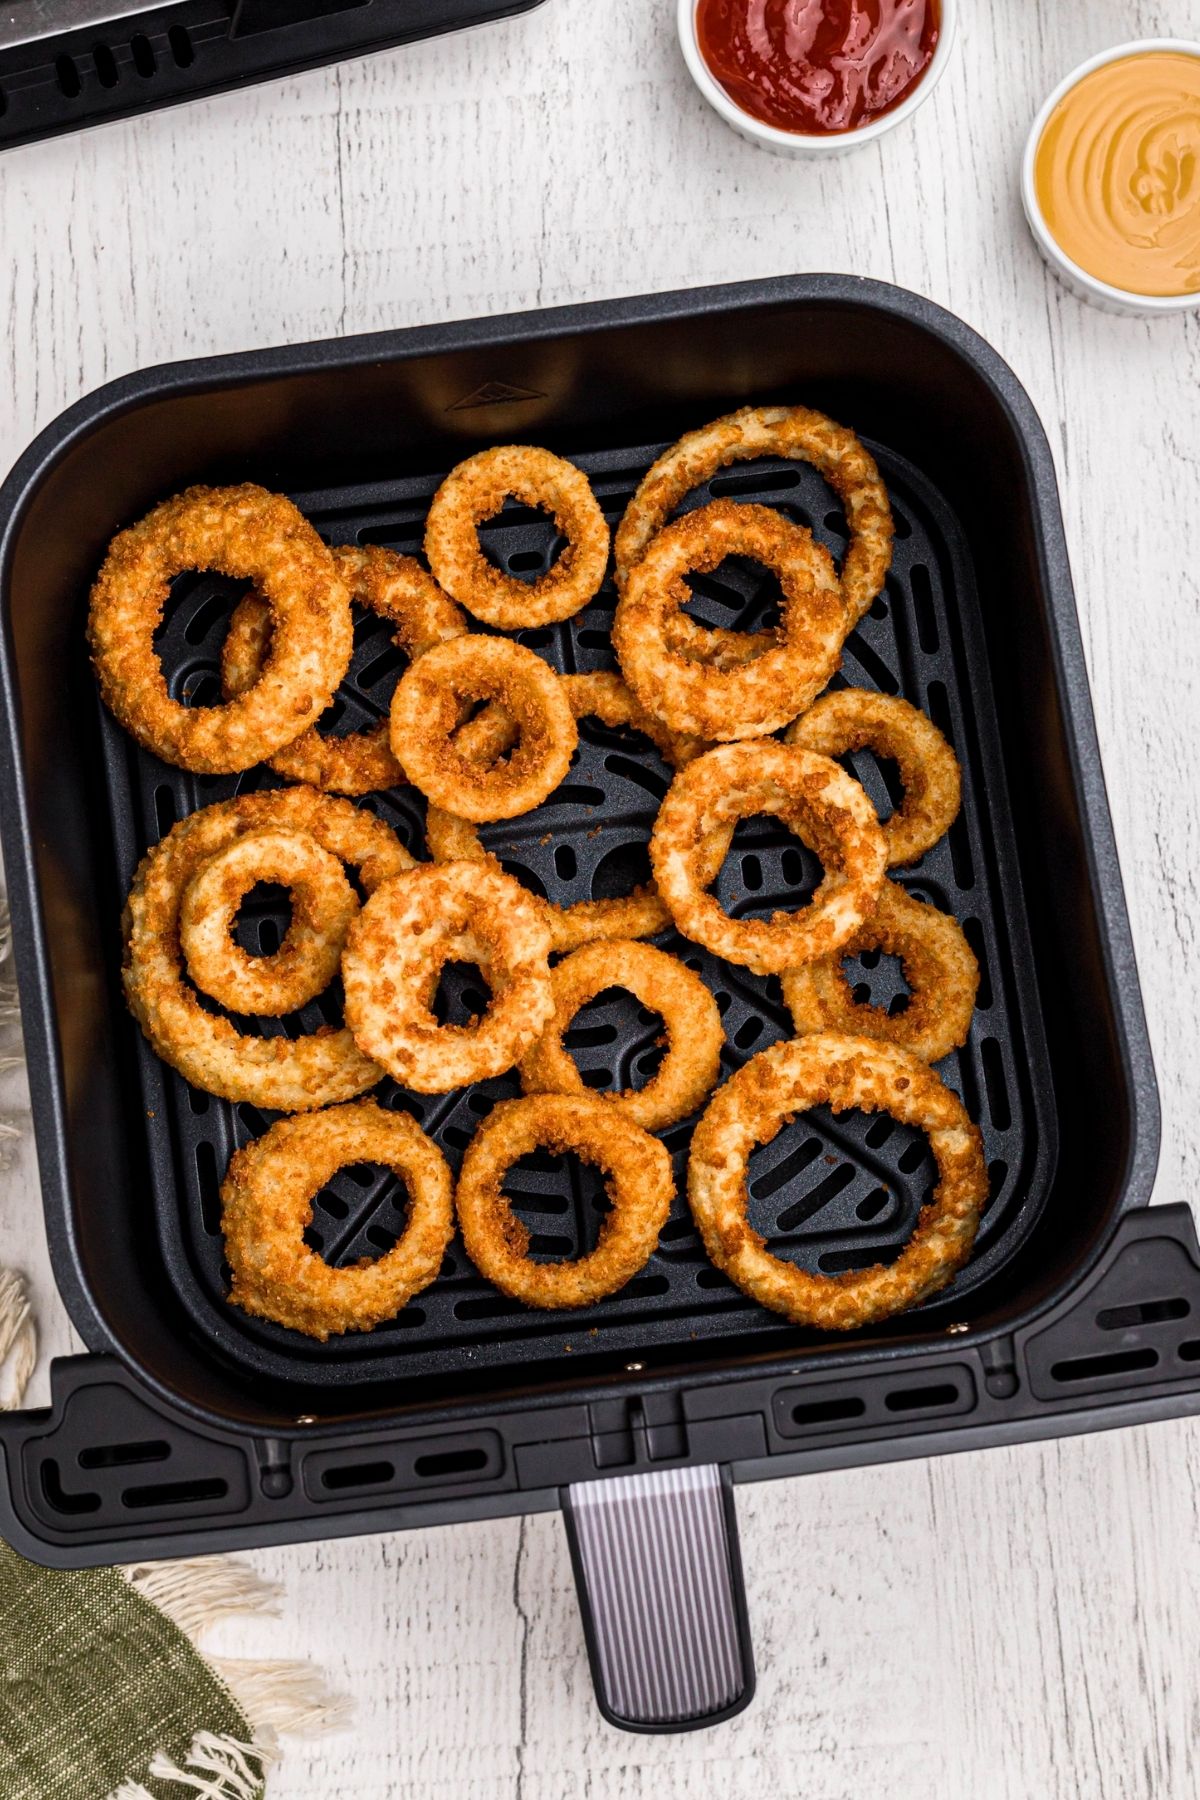 Golden frozen alexia crispy onion rings in the air fryer basket